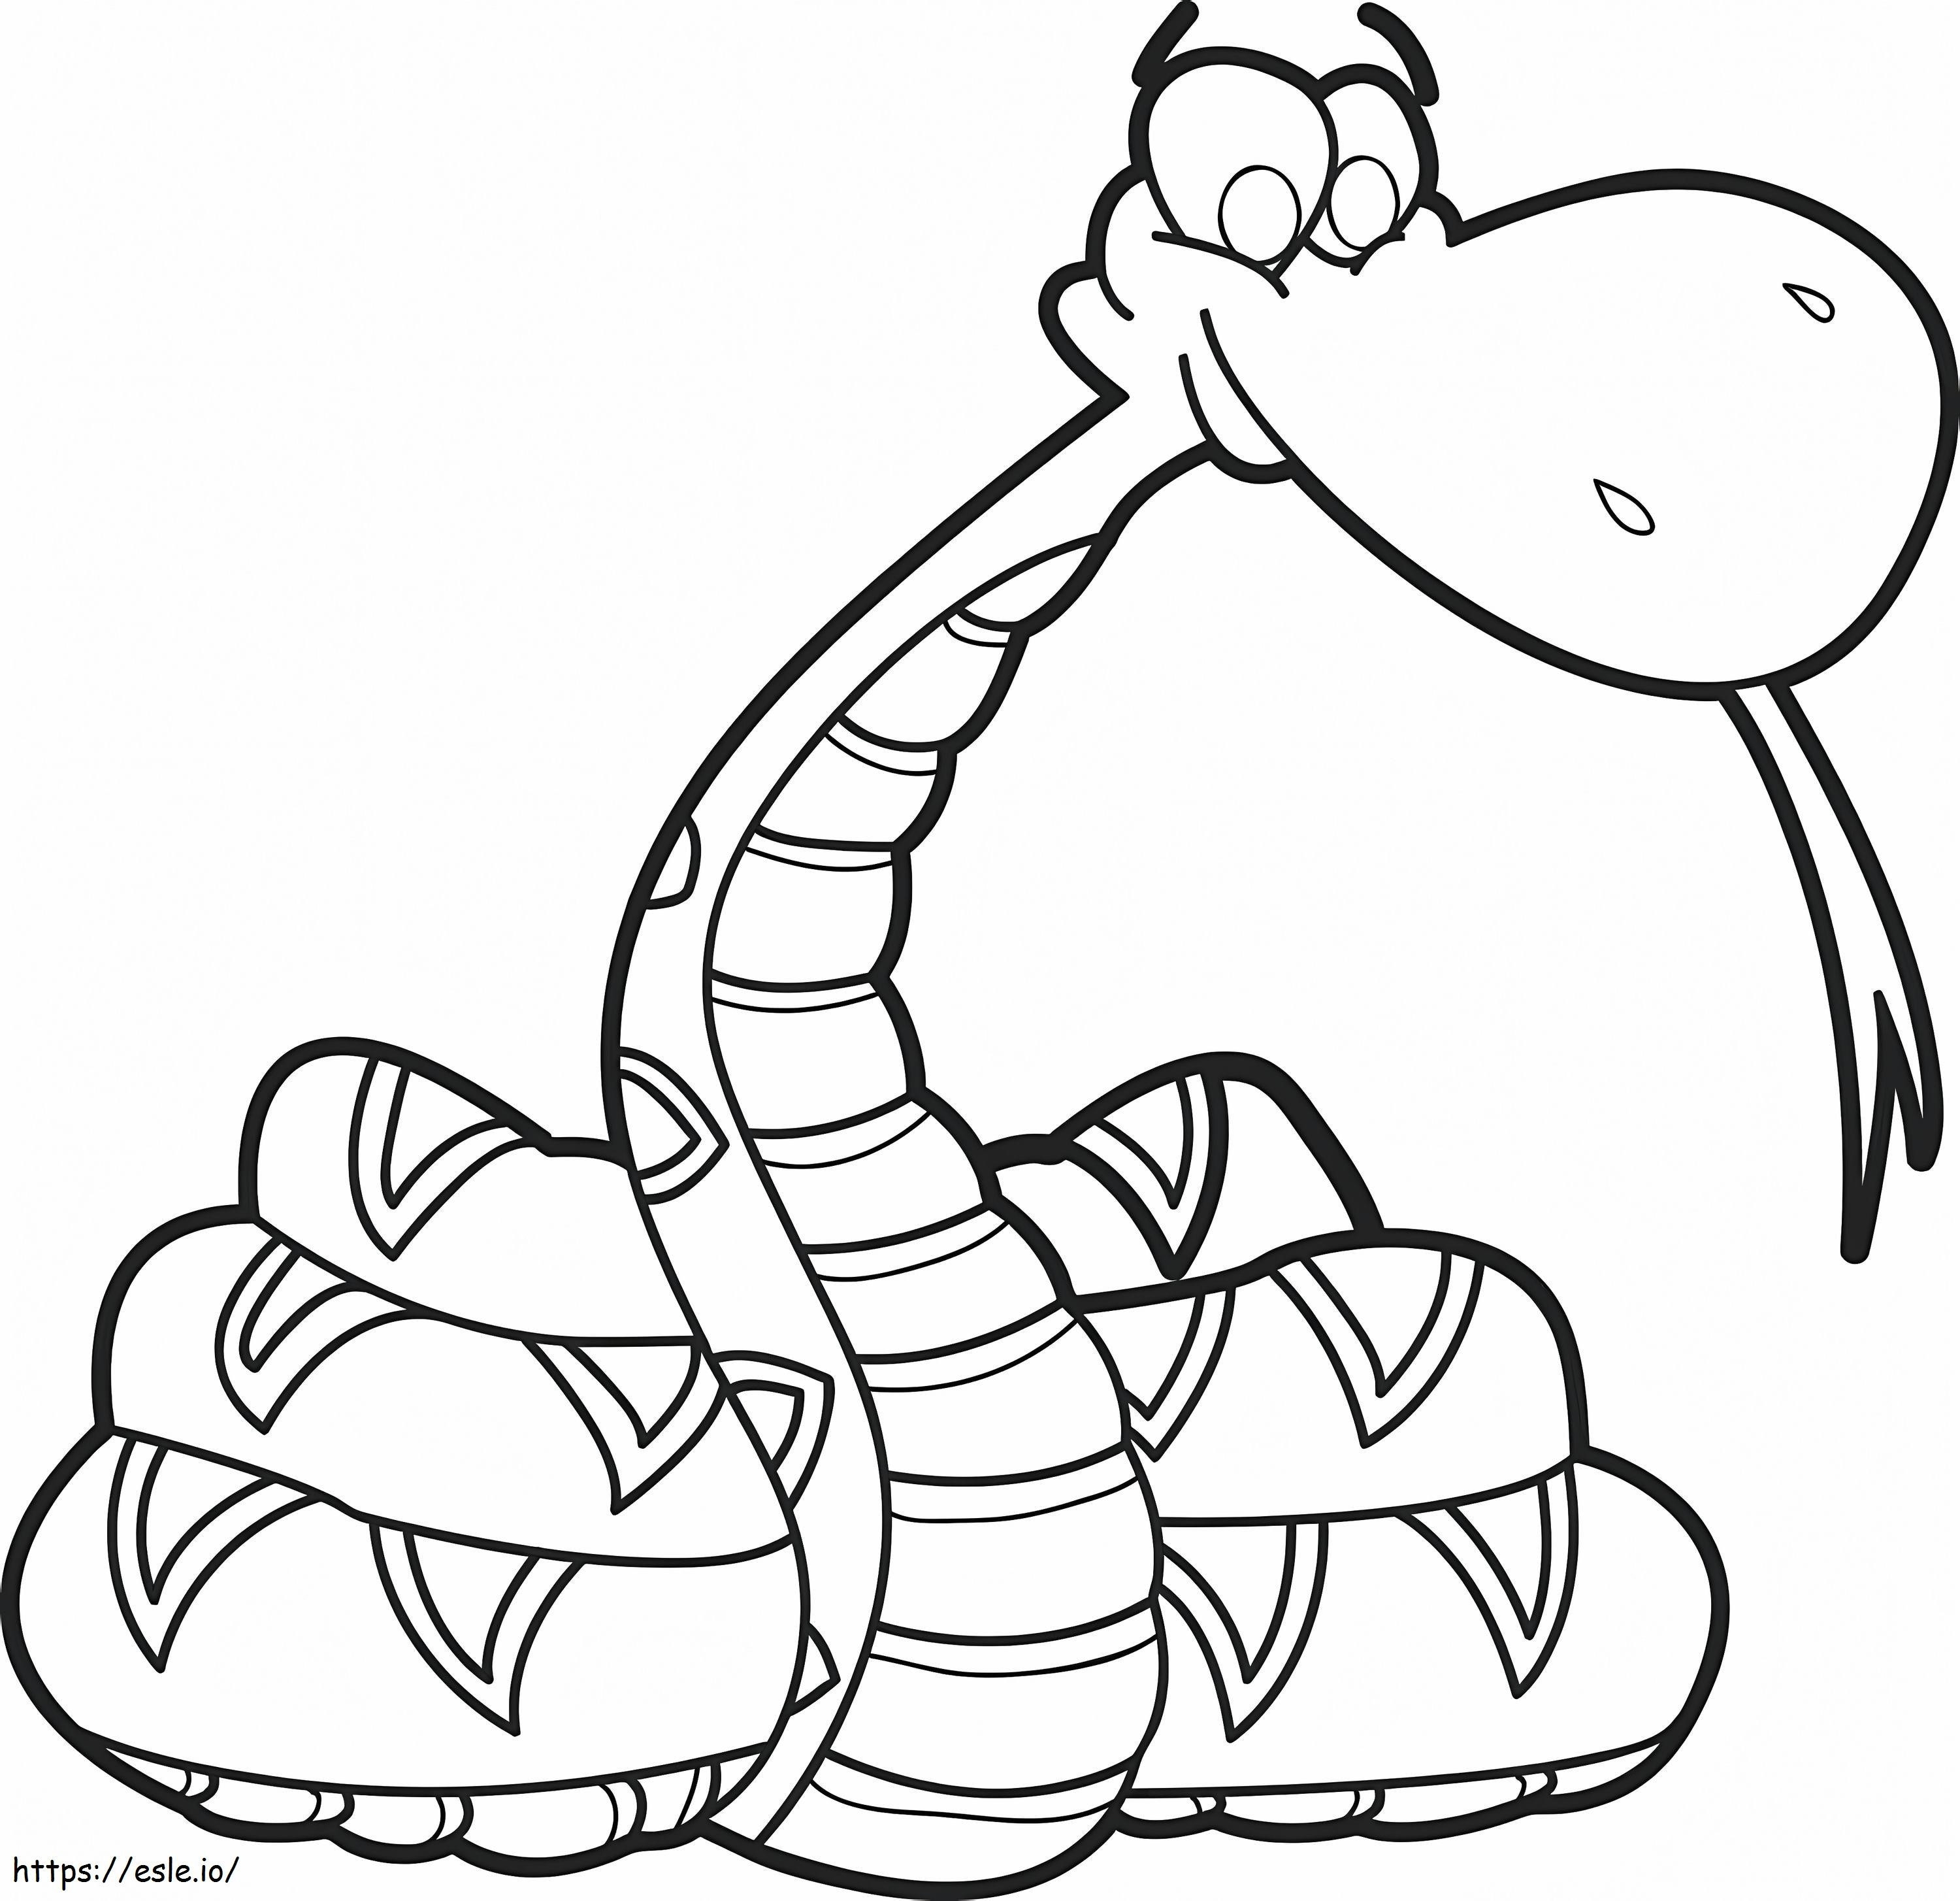 Cobra de desenho animado engraçado para colorir